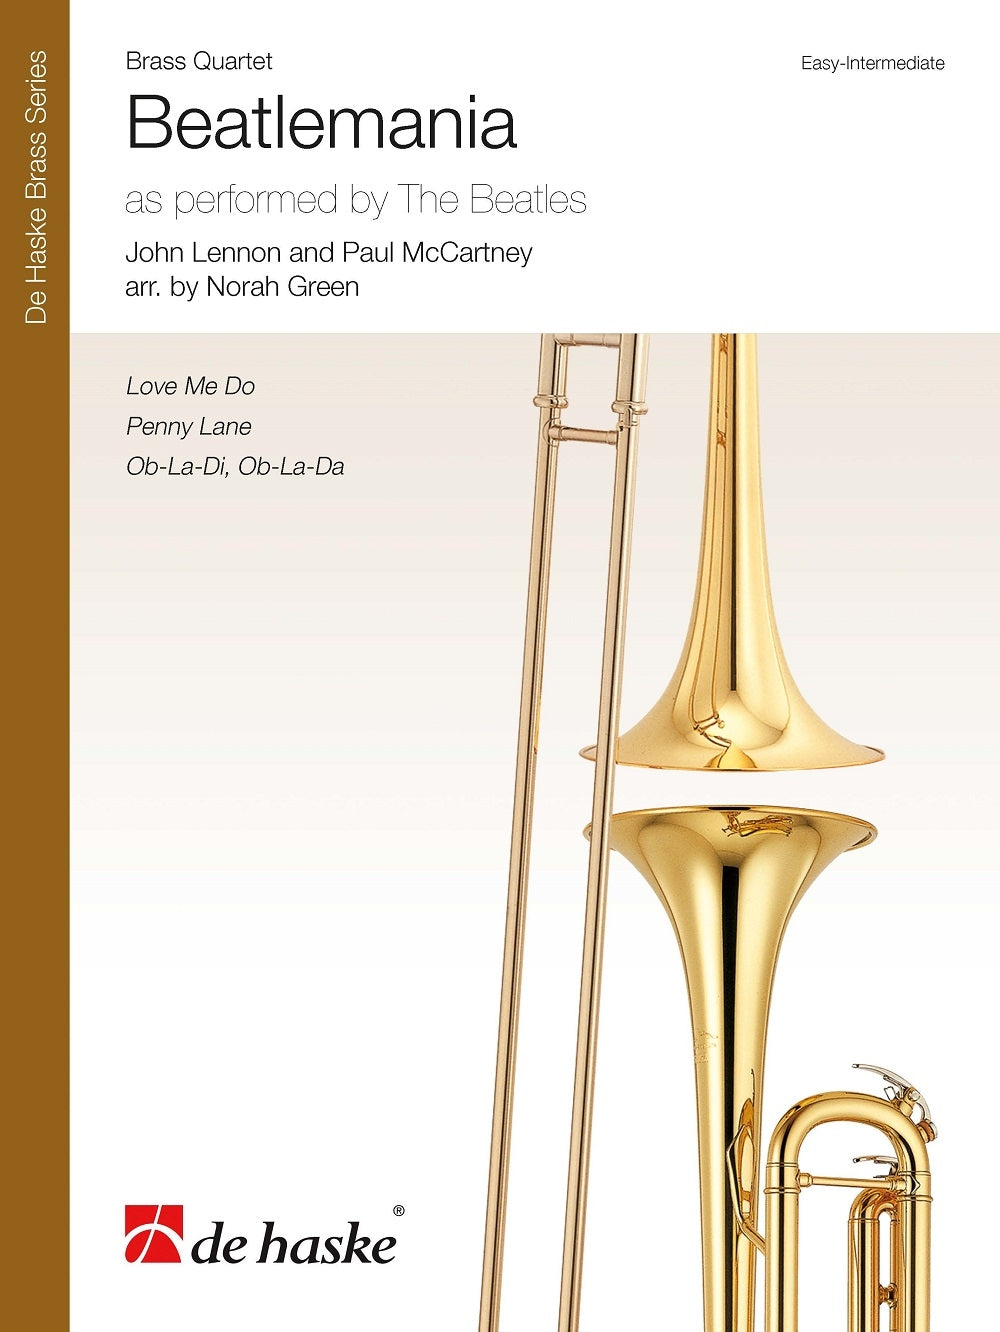 Beatlemania Brass Quartet Easy-Int DEH